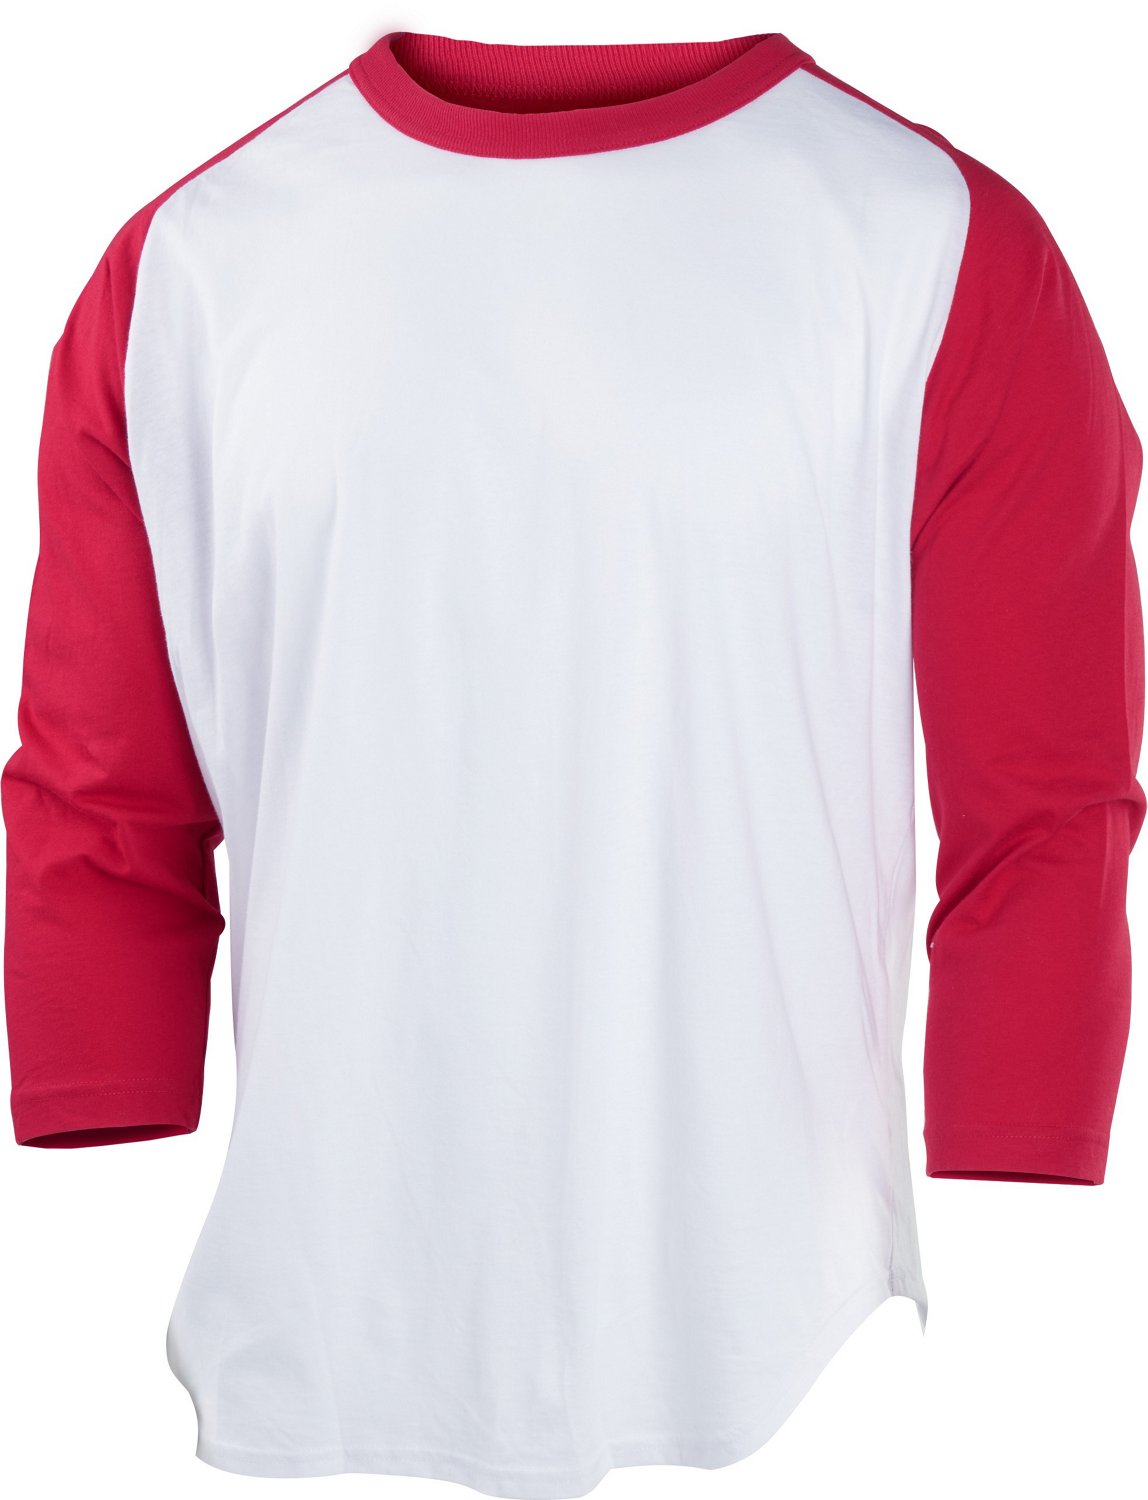 Rawlings Boston Red Sox long sleeve jersey sweatshirt mens medium